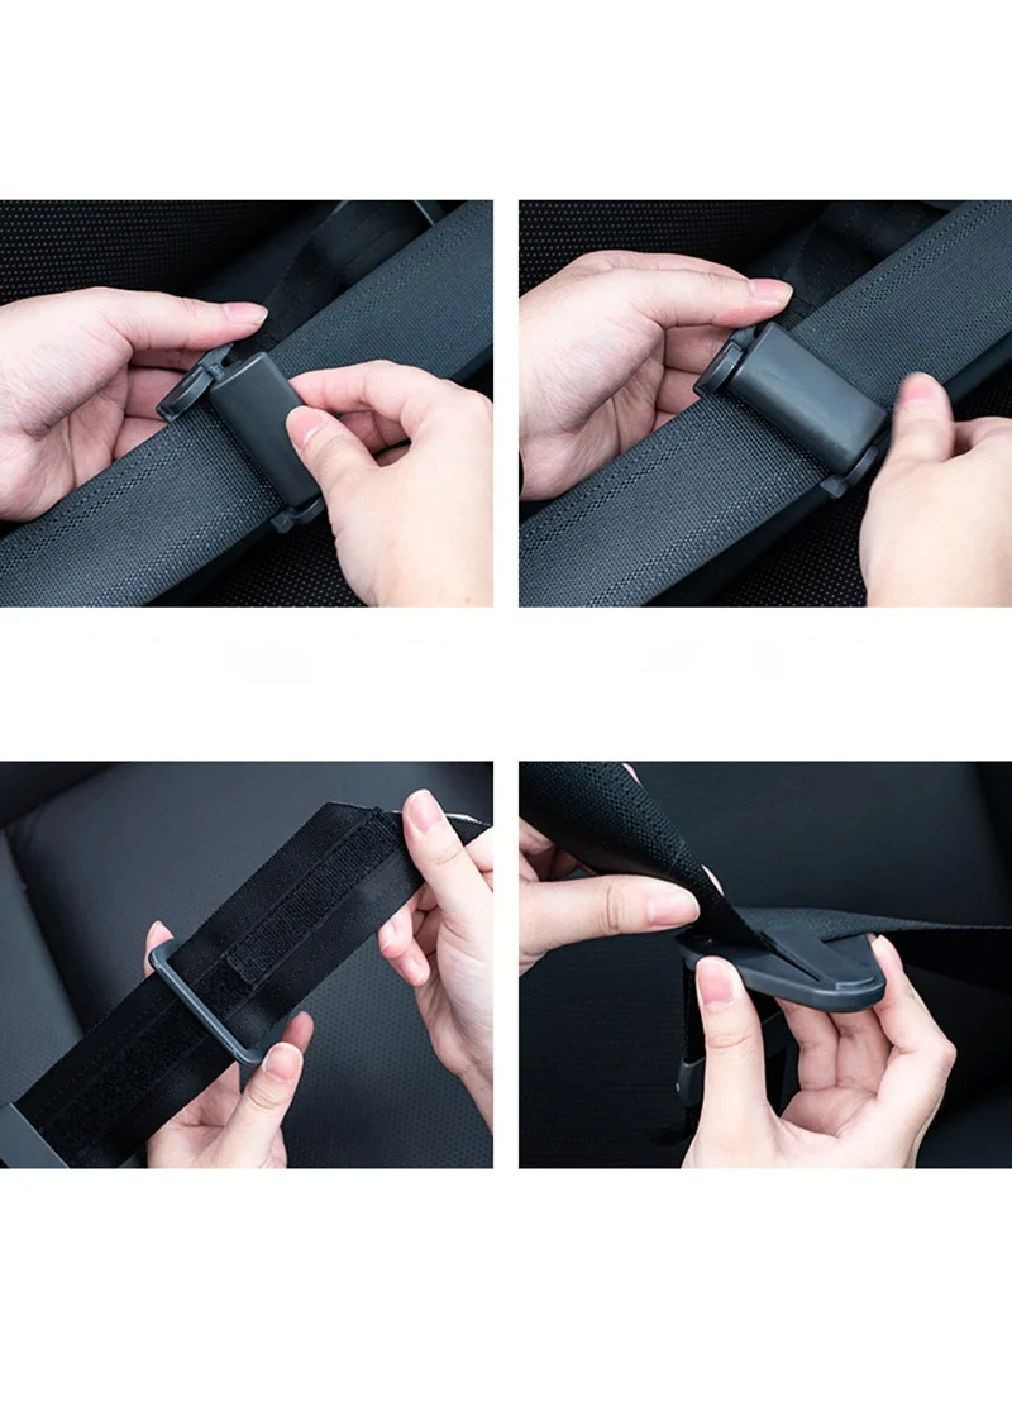 Адаптер ремня безопасности для комфортной безопасной перевозки детей в машине автомобиле 26.5 см (477080-Prob) Unbranded (294050693)